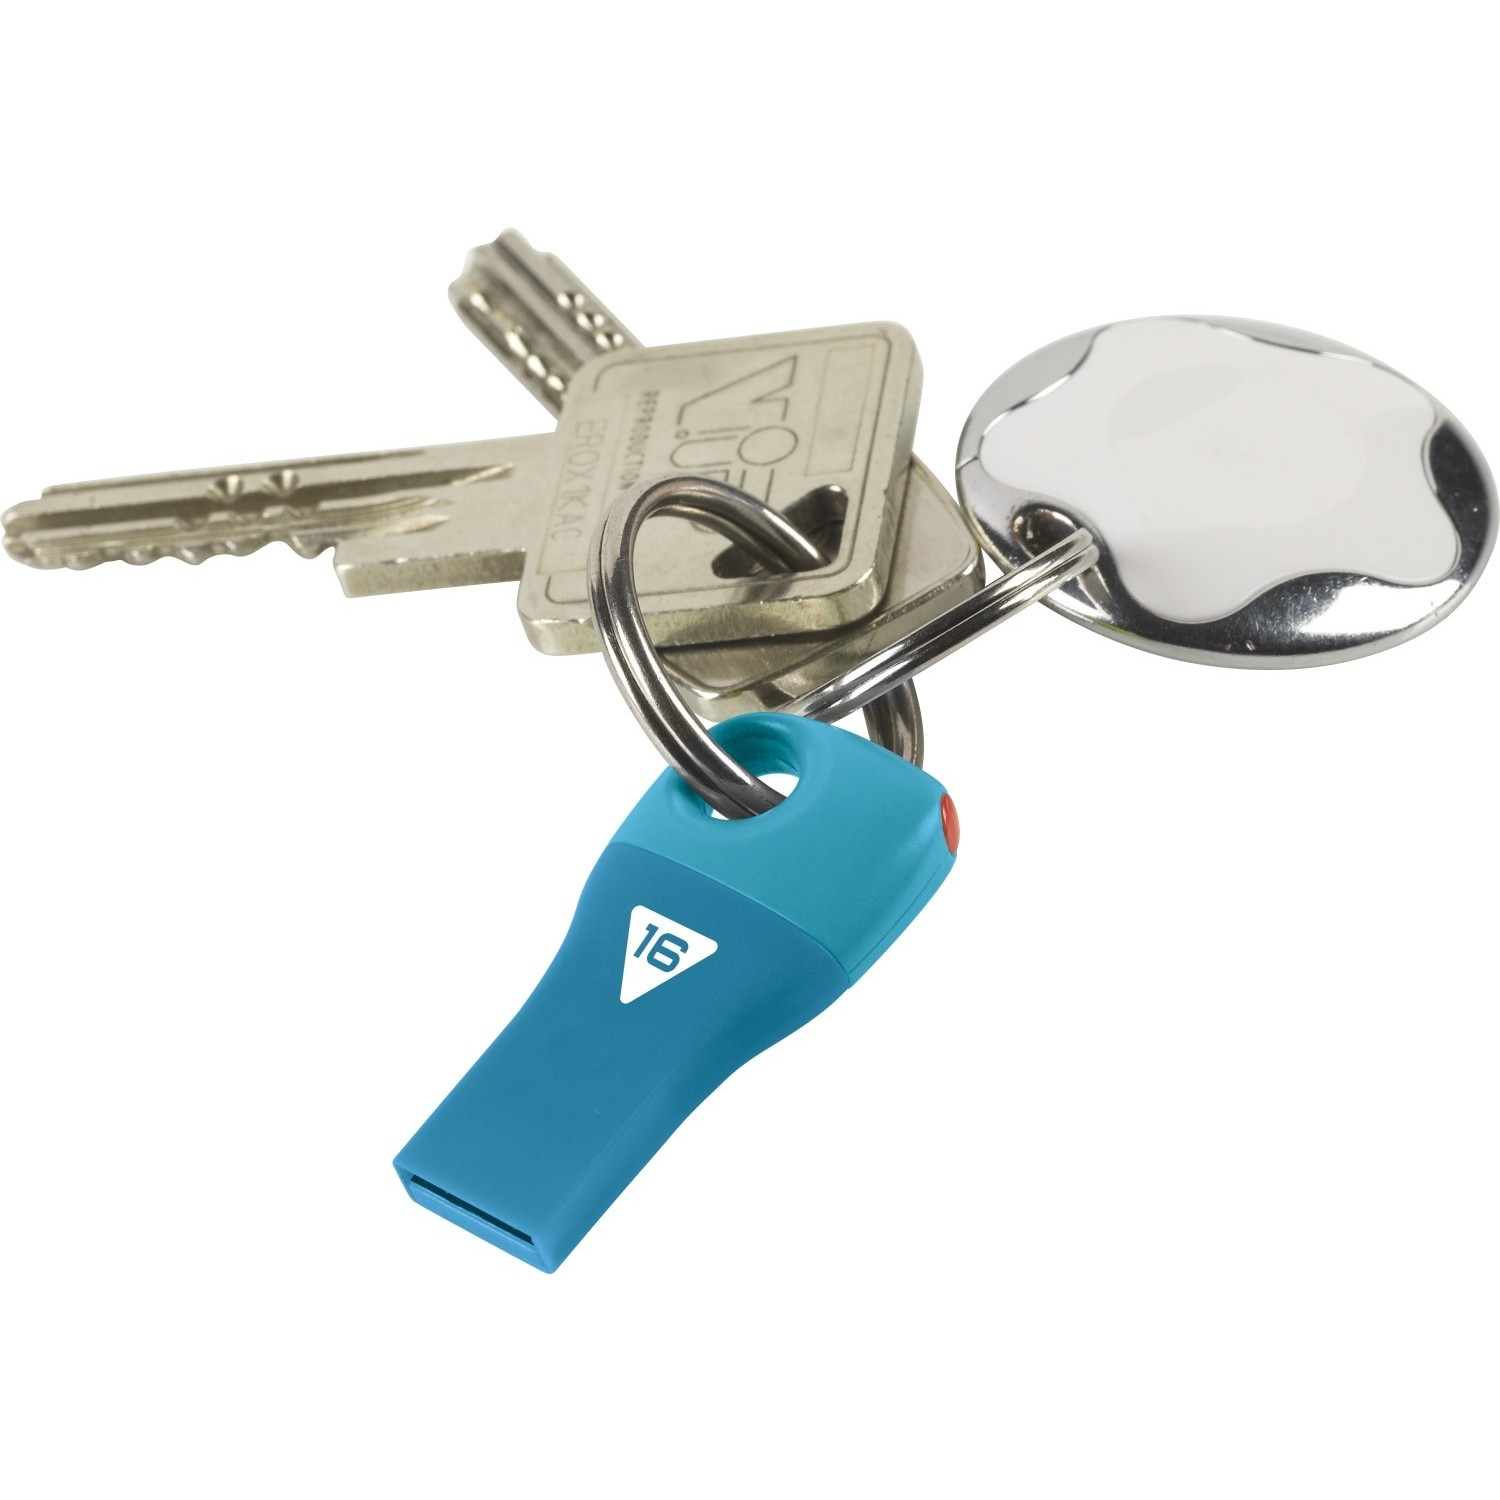 Blue key. Emtec 16. Keys.